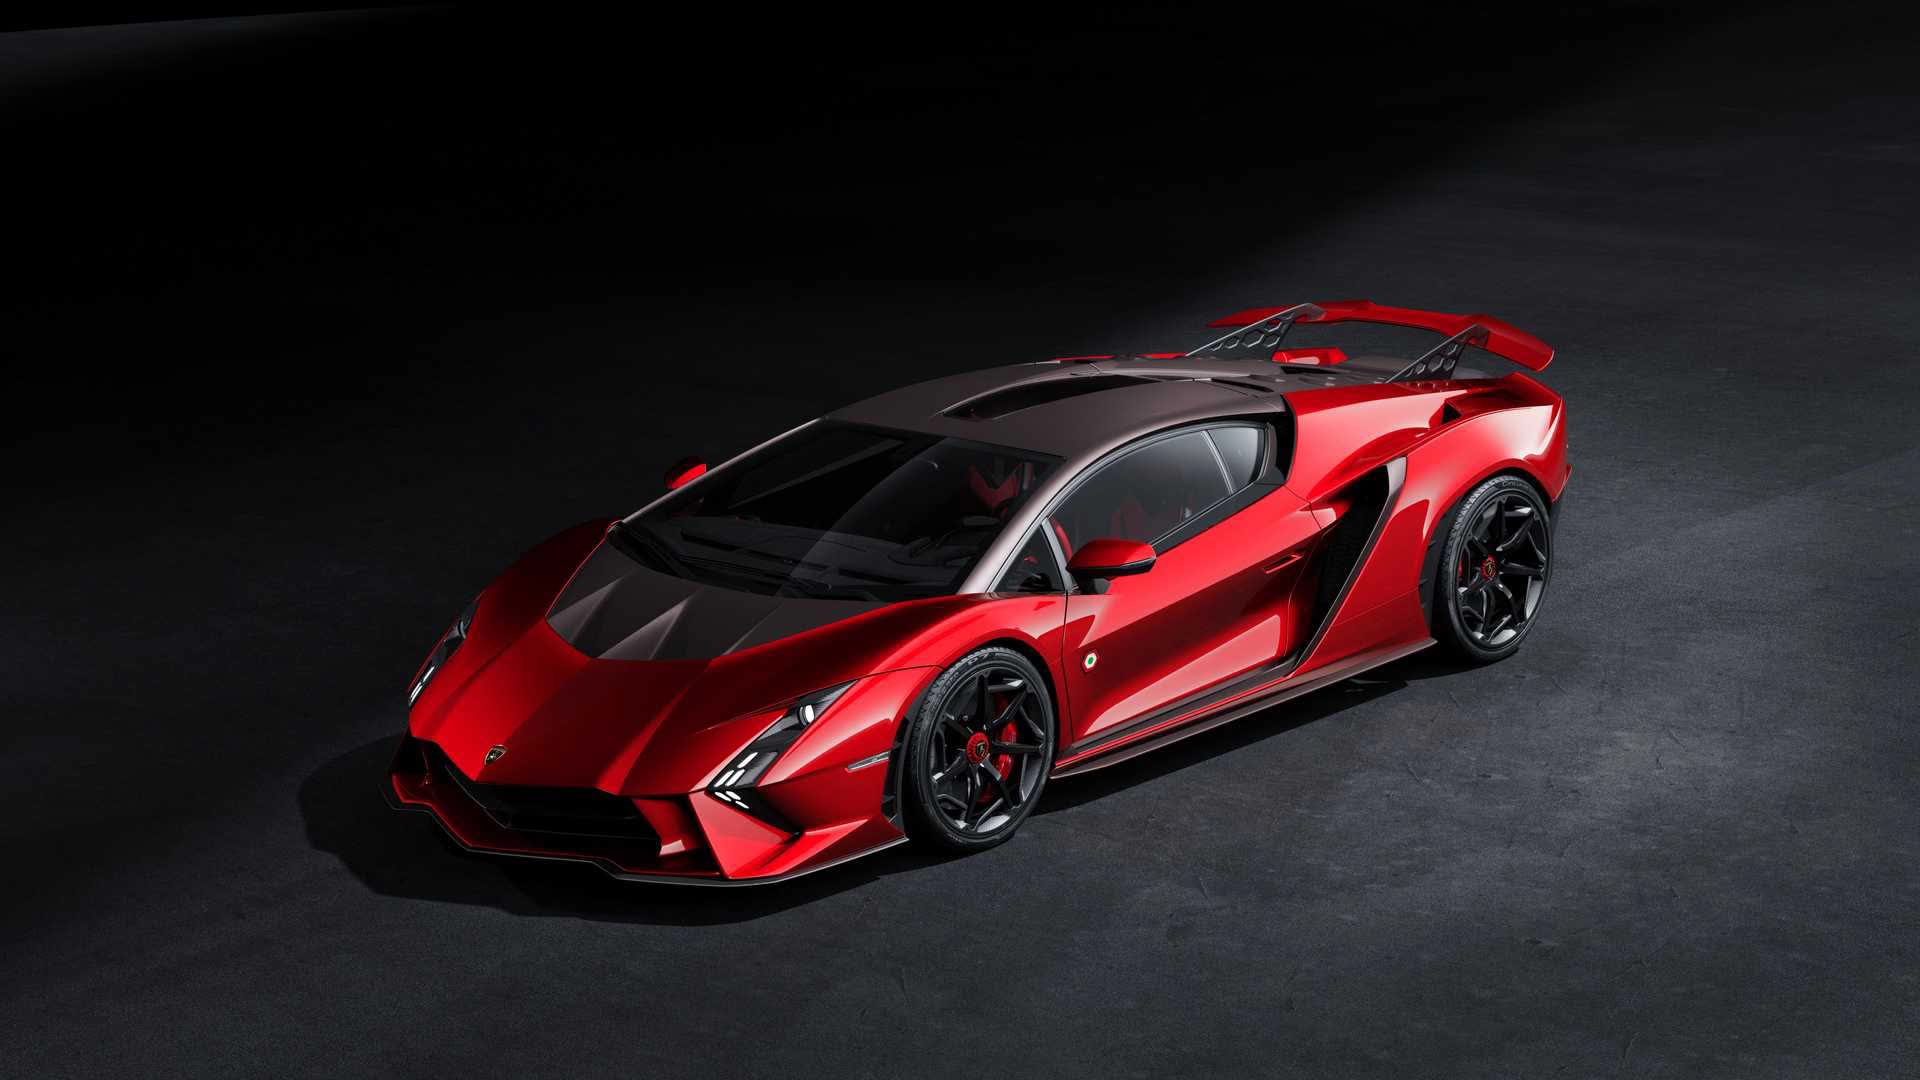 Lamborghini ra mắt bộ đôi siêu xe V12 chạy xăng cuối cùng, sau đây sẽ toàn siêu xe điện êm ru chưa biết nẹt pô kiểu gì - ảnh 1